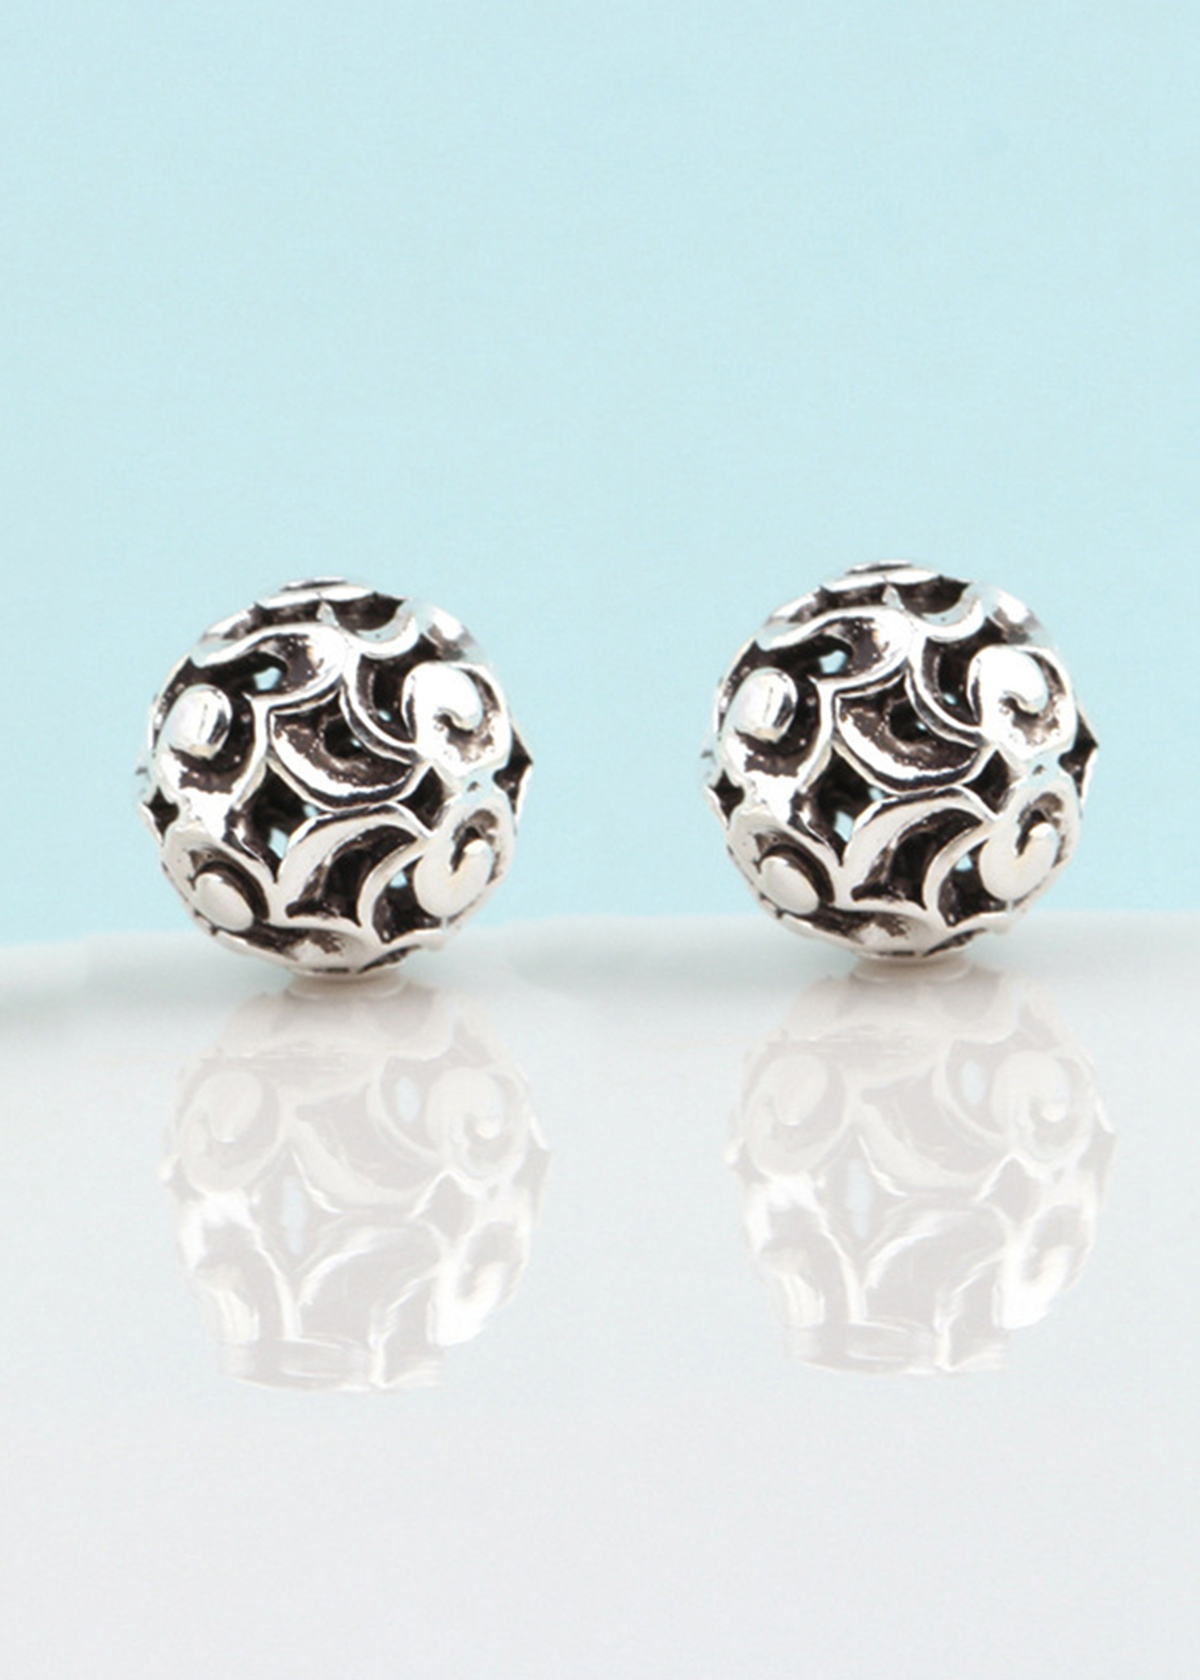 Hình ảnh Combo 3 cái charm bạc hình cầu họa tiết hoa văn xỏ ngang - Ngọc Quý Gemstones